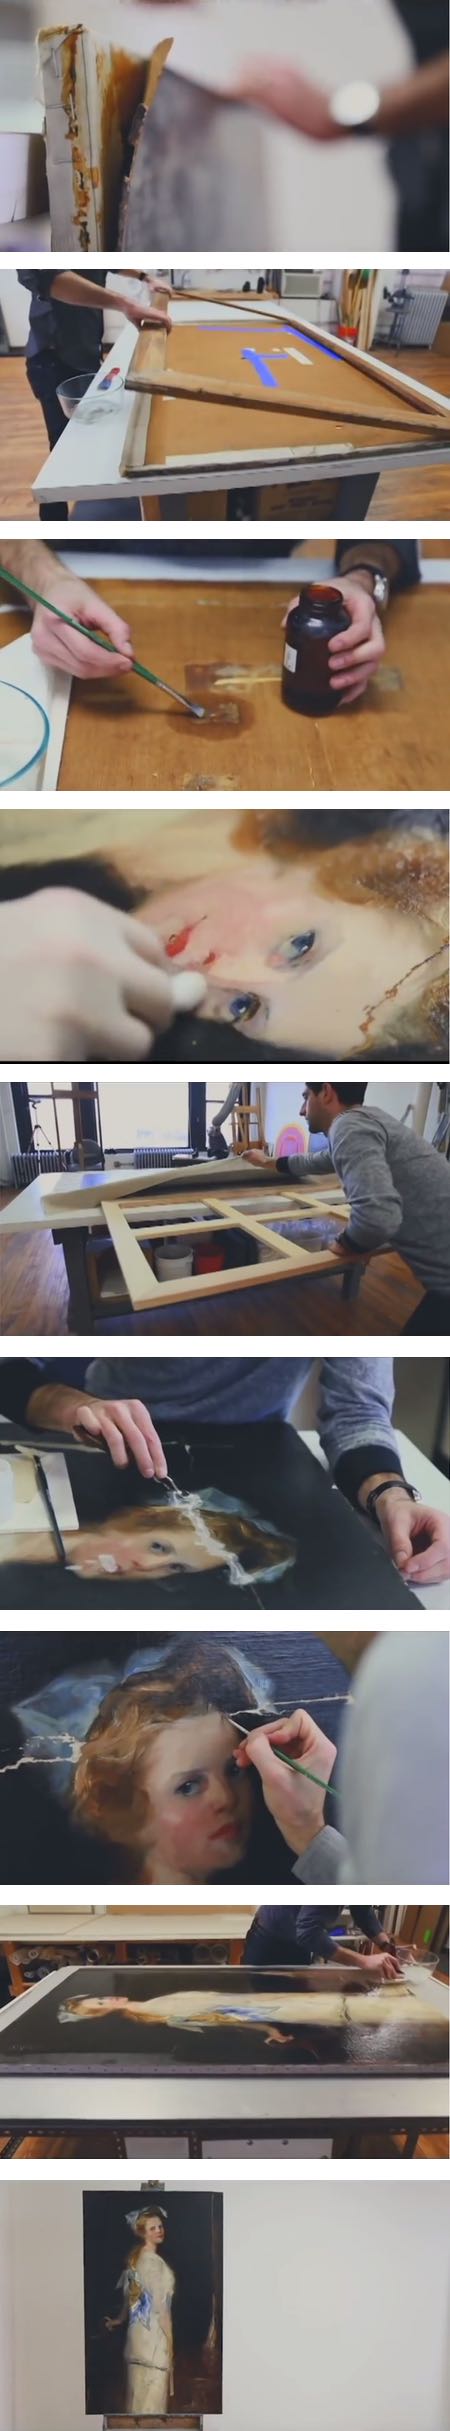 Baumgartner painting restoration videos